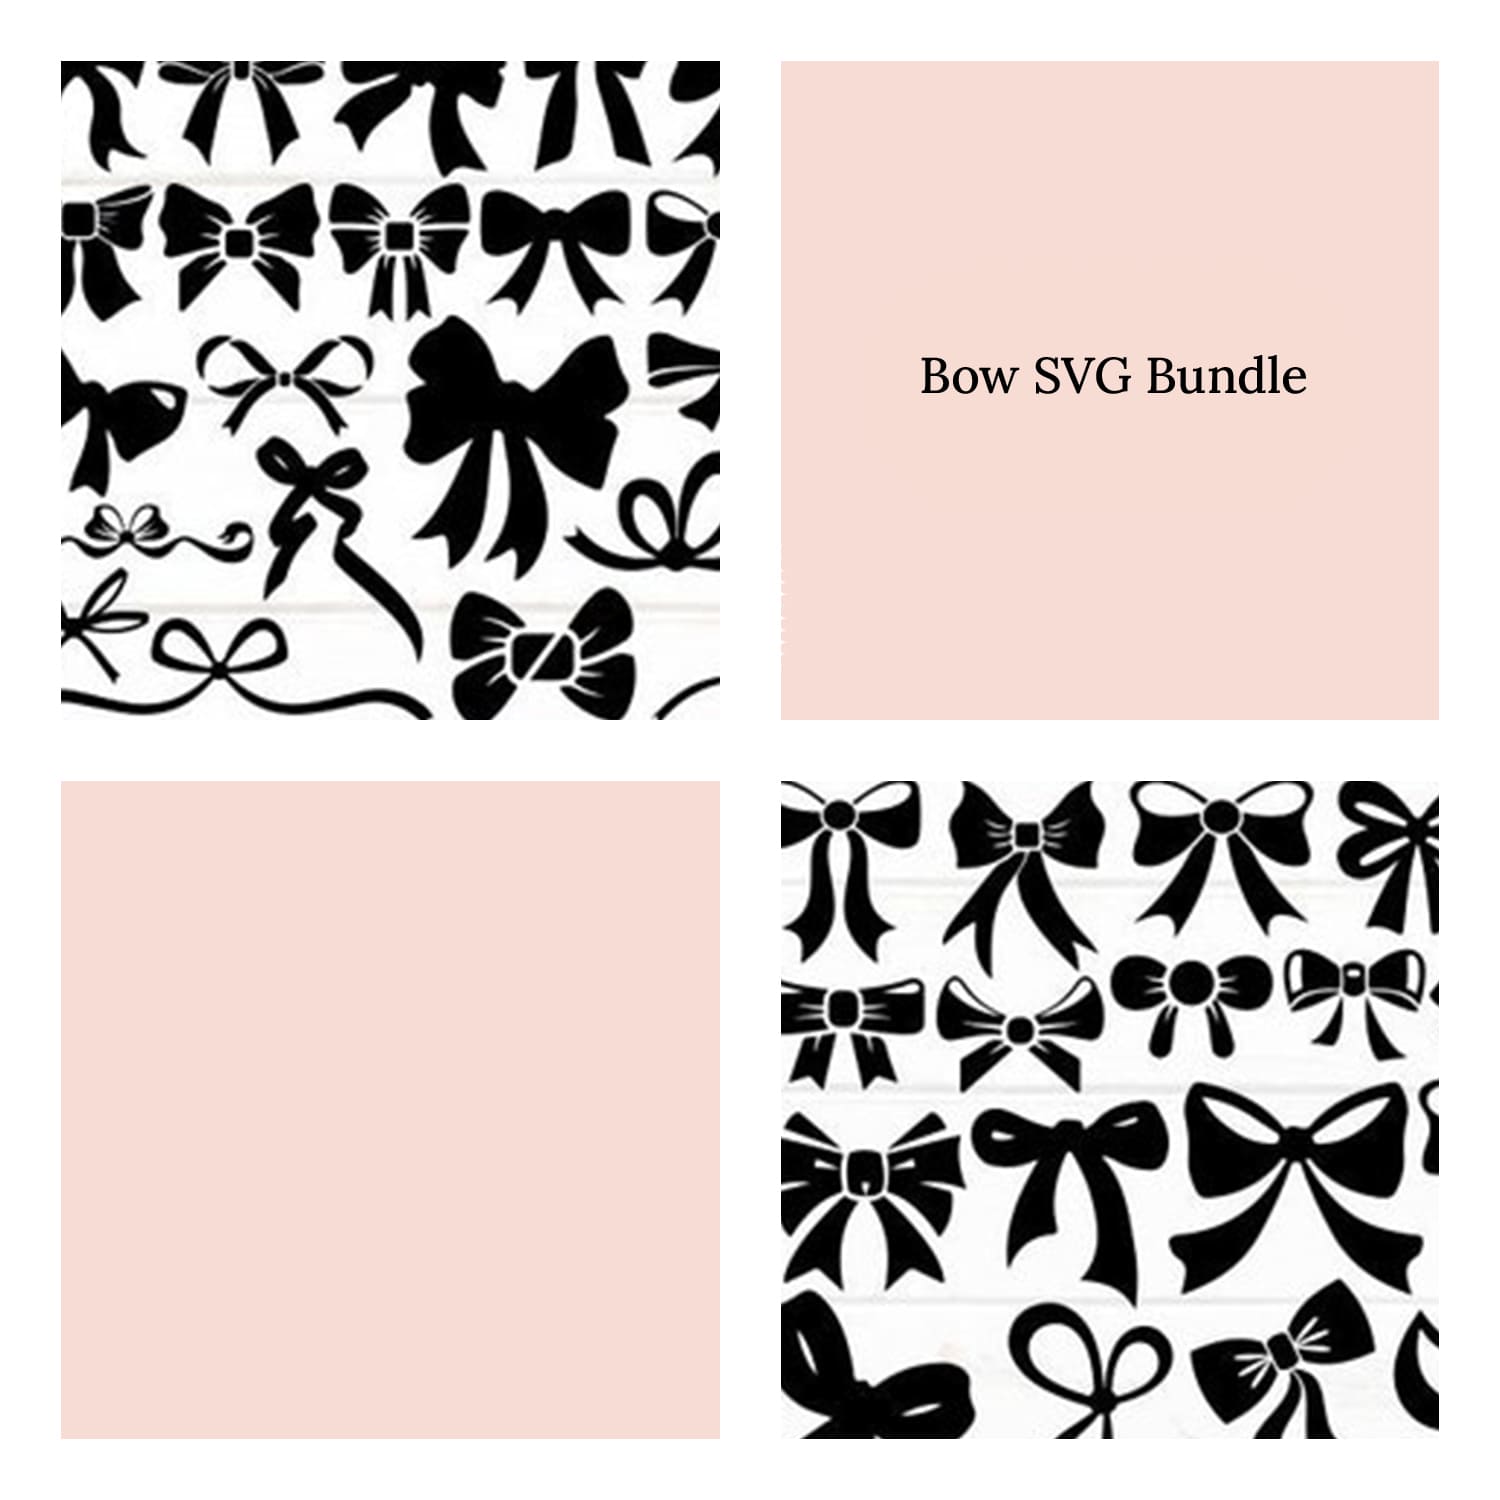 Bow SVG Bundle cover.